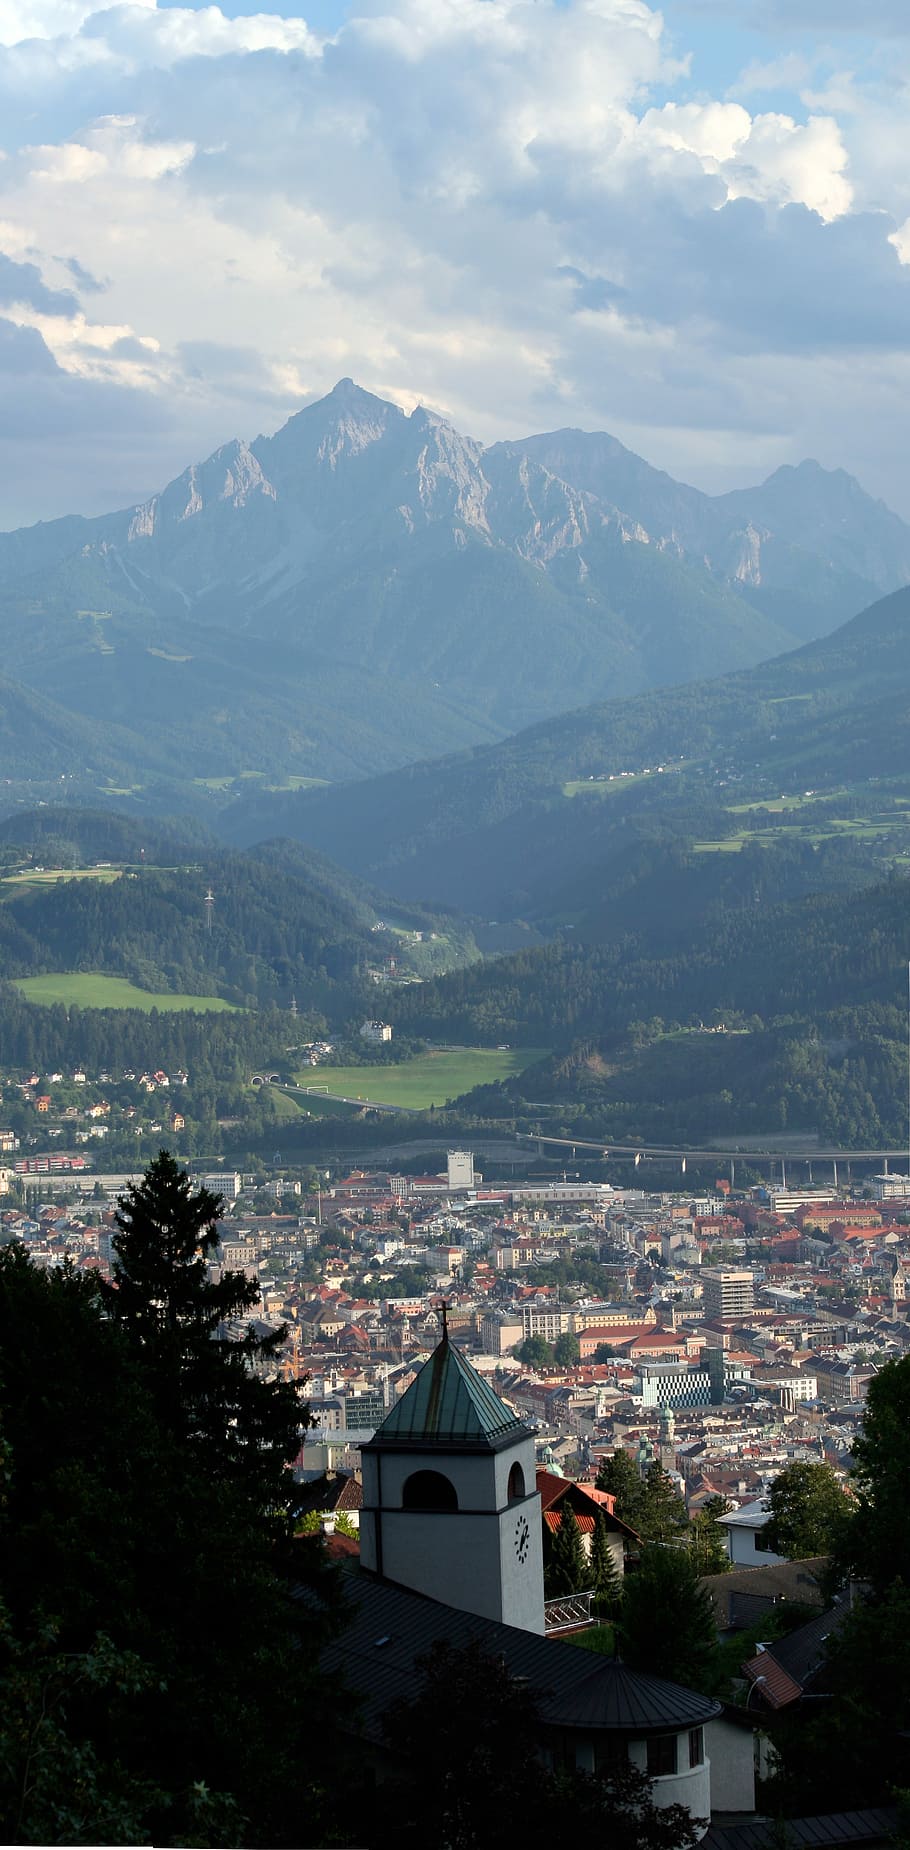 панорамный, Посмотреть, ищу, Панорамный вид, глядя вниз, Инсбрук, Австрия, пейзаж, пейзажи, гора